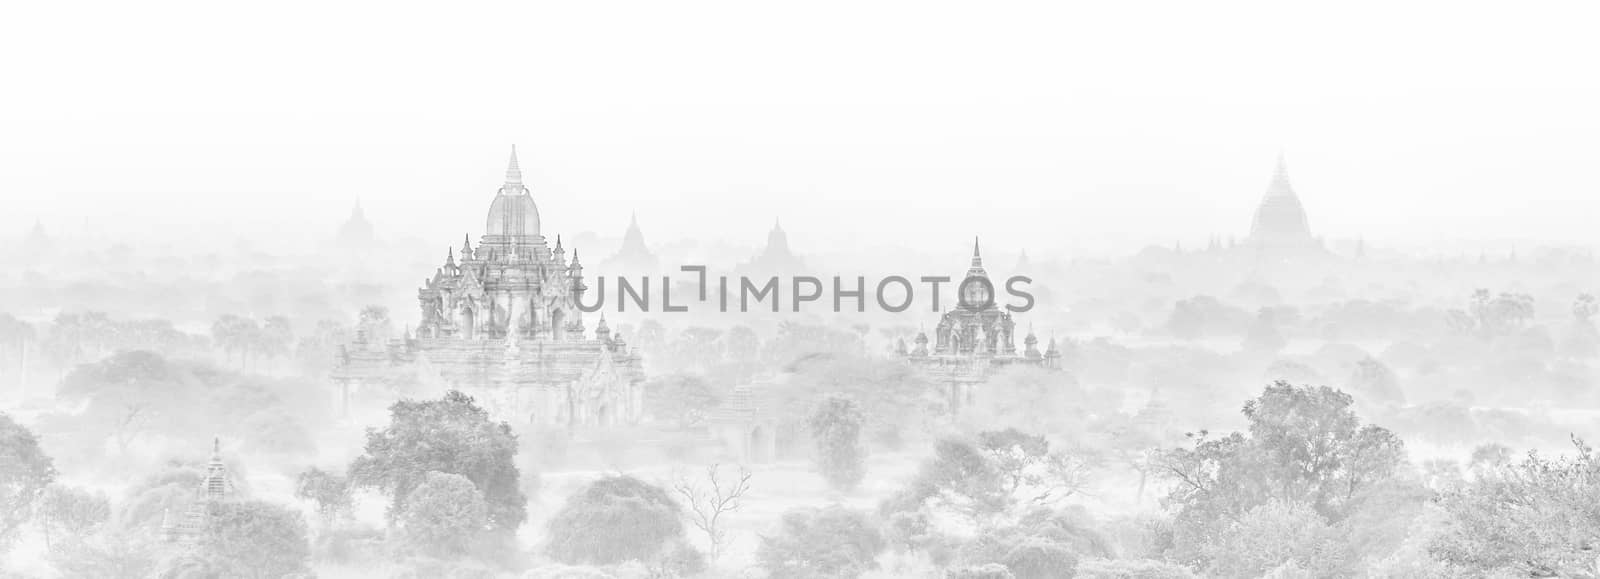 Temples of Bagan, Burma, Myanmar, Asia. by kasto